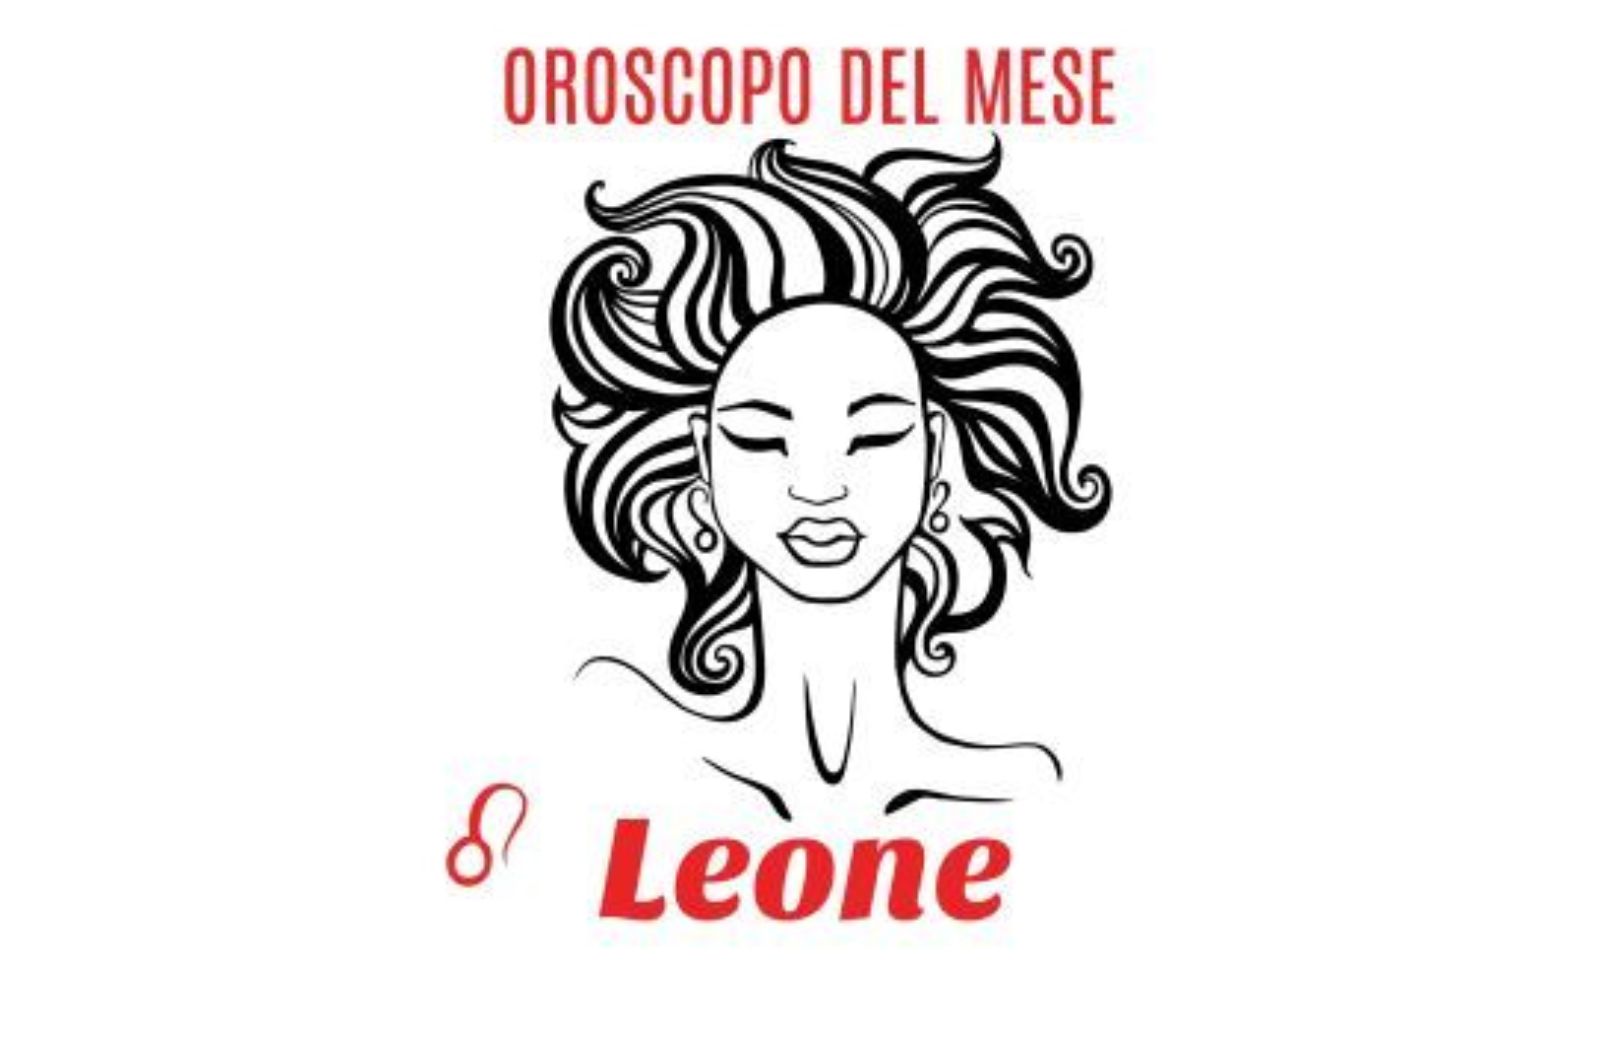 Oroscopo del mese: Leone - marzo 2020